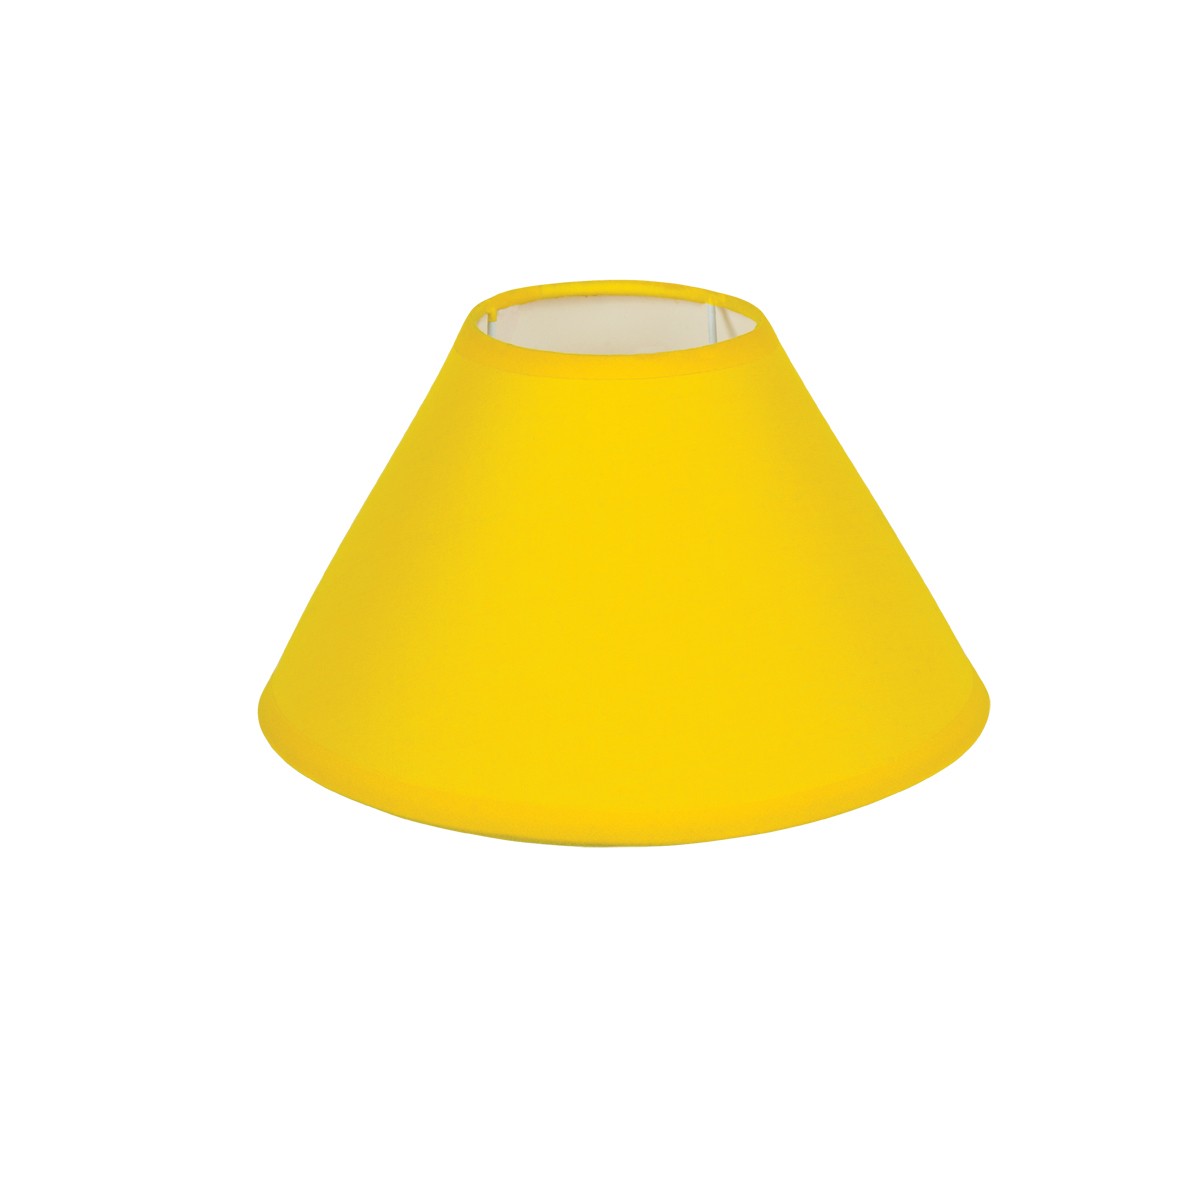 Καπέλο Μονόχρωμο Στρογγυλό Φ25cm Κάτω Πλευρά- Σε Κίτρινο Χρώμα        VK/E27/E14/D25/Y